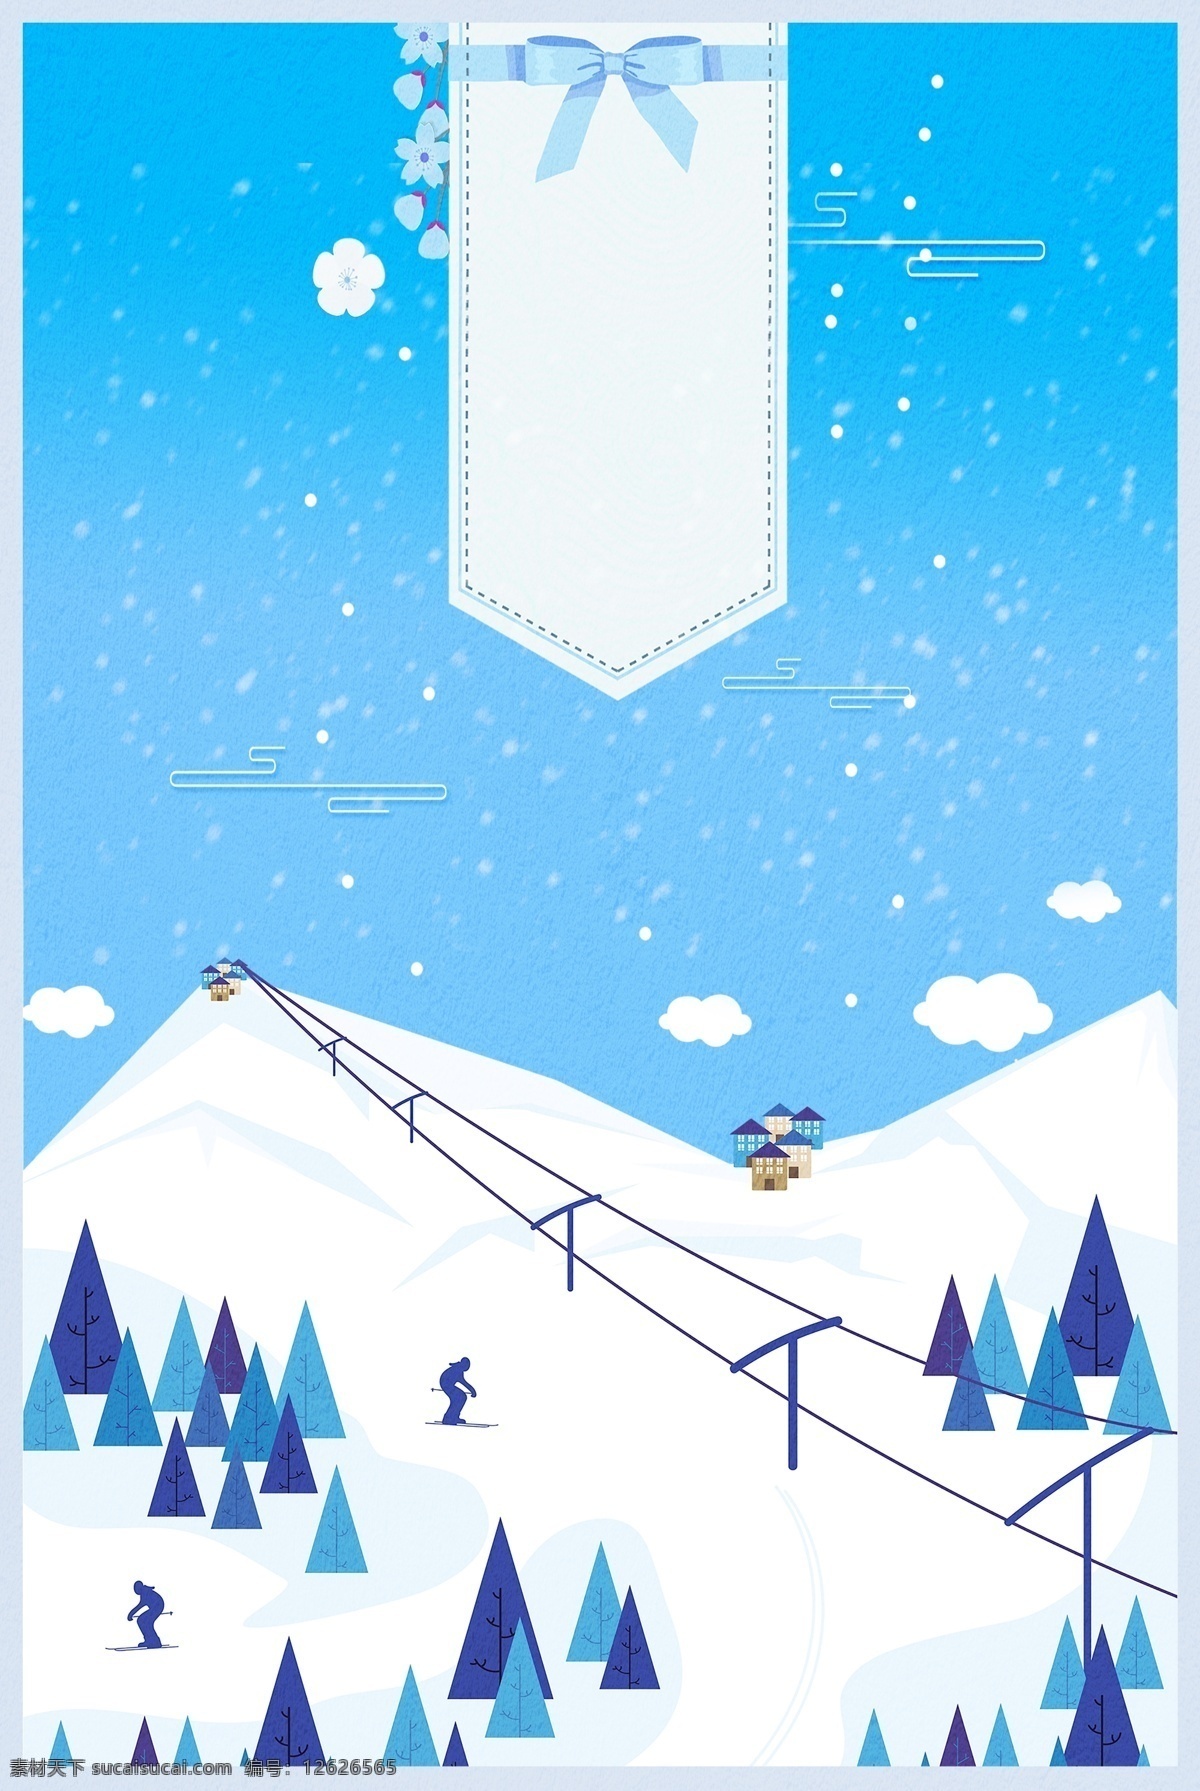 冬季 雪场 滑雪 主题 背景 冬季素材 活动背景 海报背景 冰雪背景 背景设计 滑雪比赛 滑雪场 滑雪背景 滑雪活动场 滑雪活动背景 滑雪展板